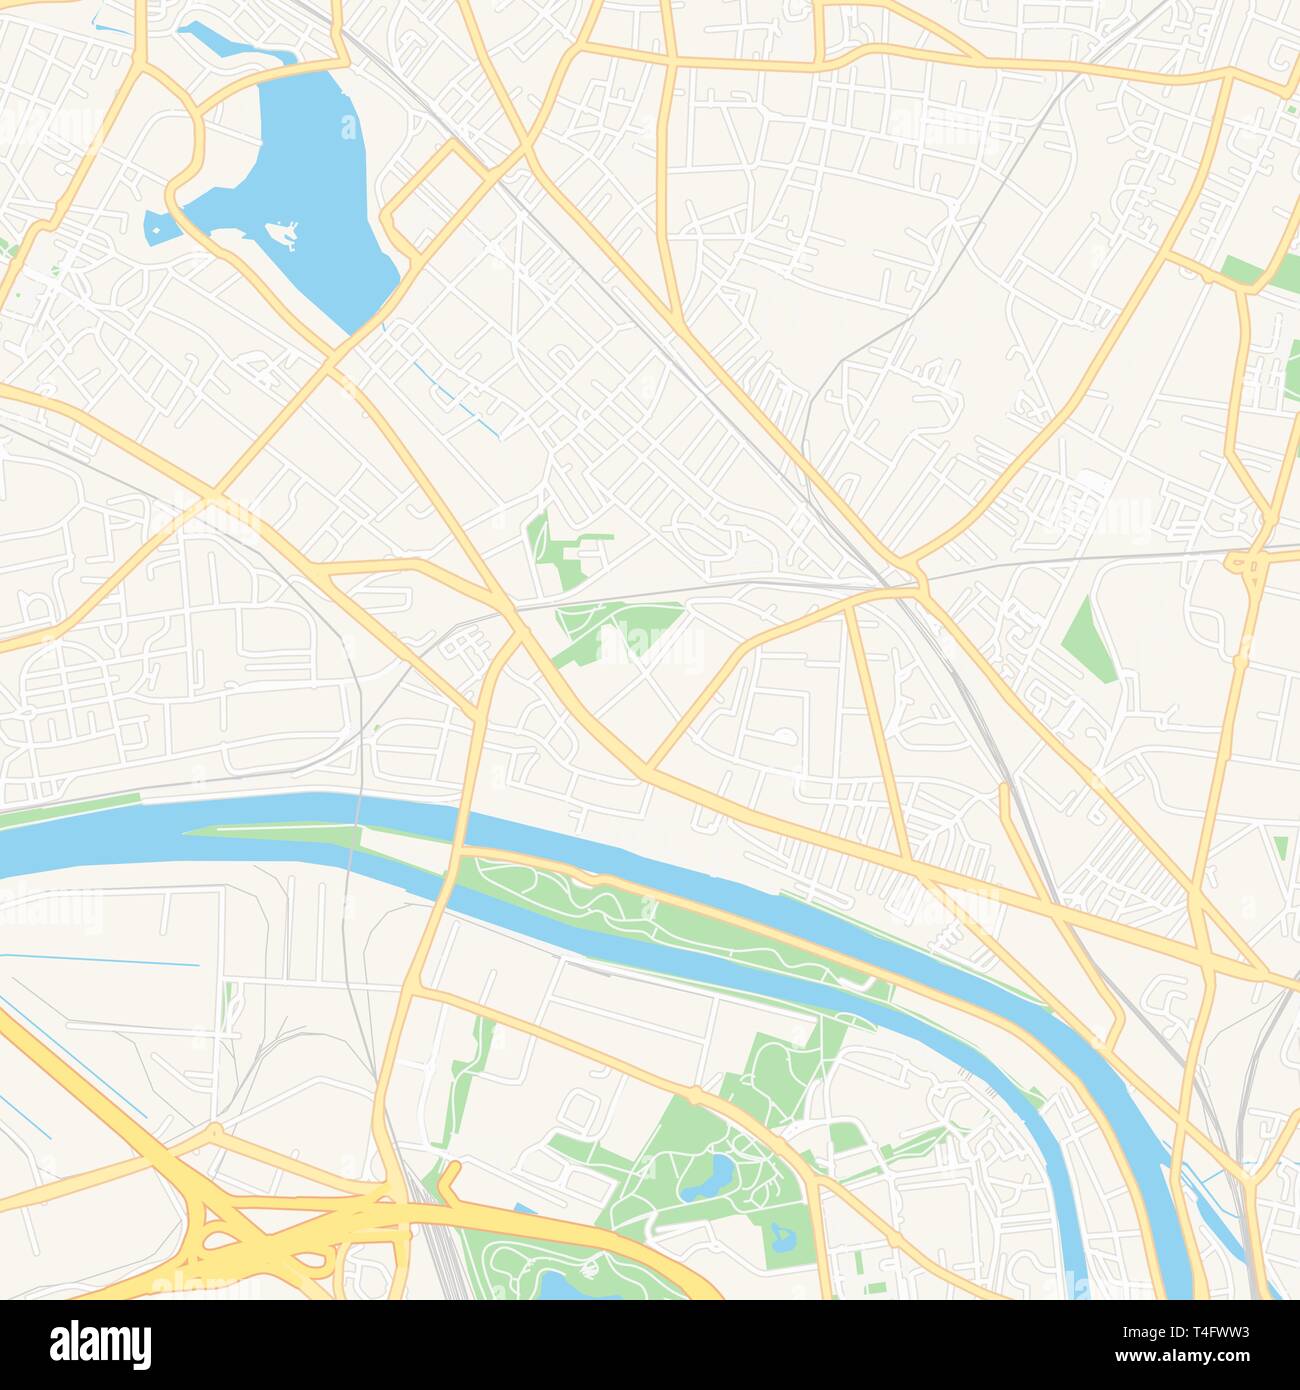 Druckbare Karte von Epinay-sur-Seine, Frankreich mit Haupt- und Nebenstraßen und größere Bahnen. Diese Karte ist sorgfältig für das Routing und die Überführung in konzipiert Stock Vektor